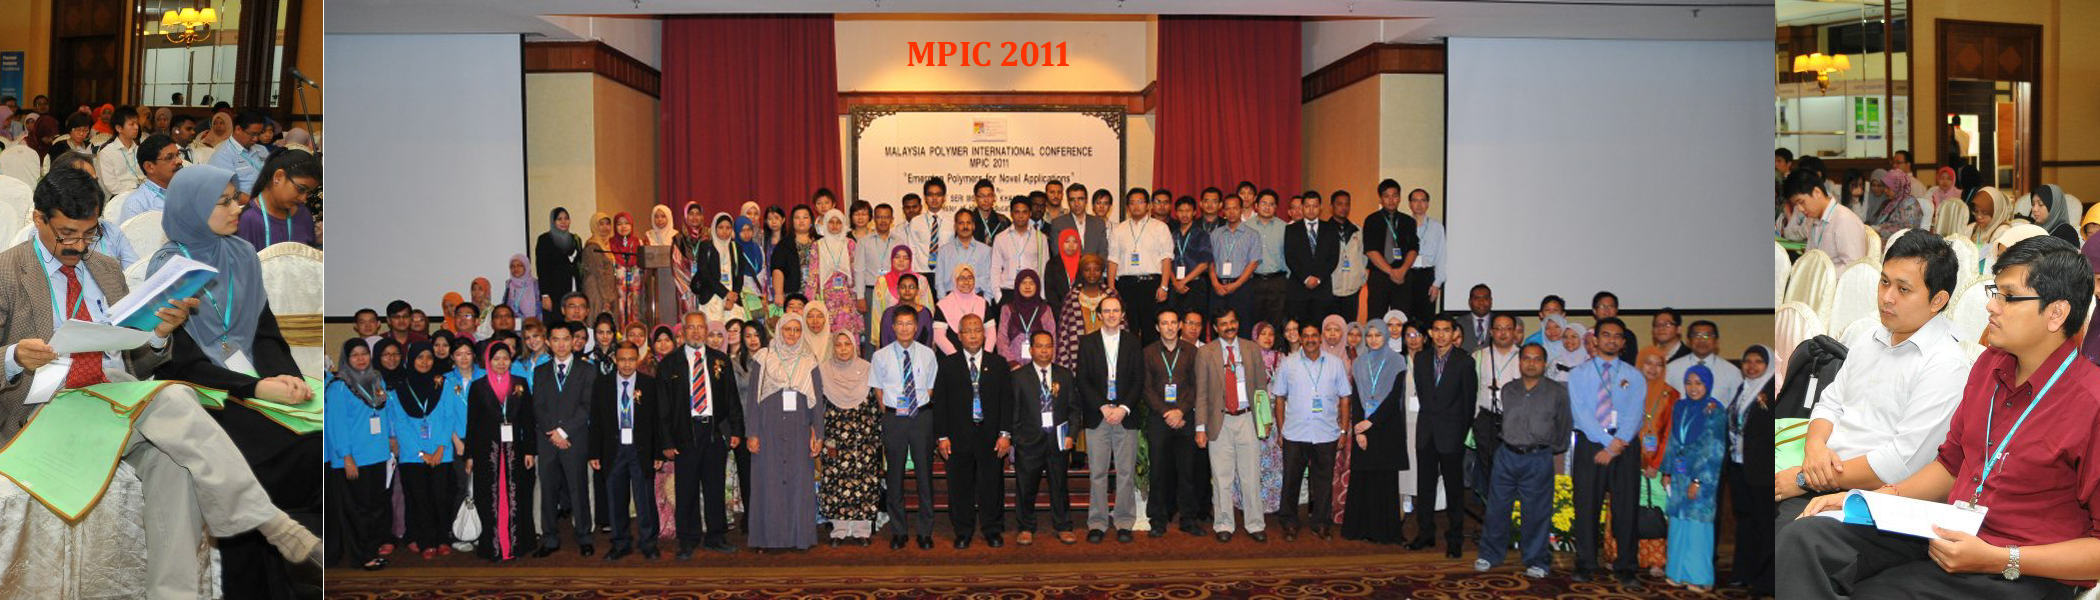 MPIC 2011